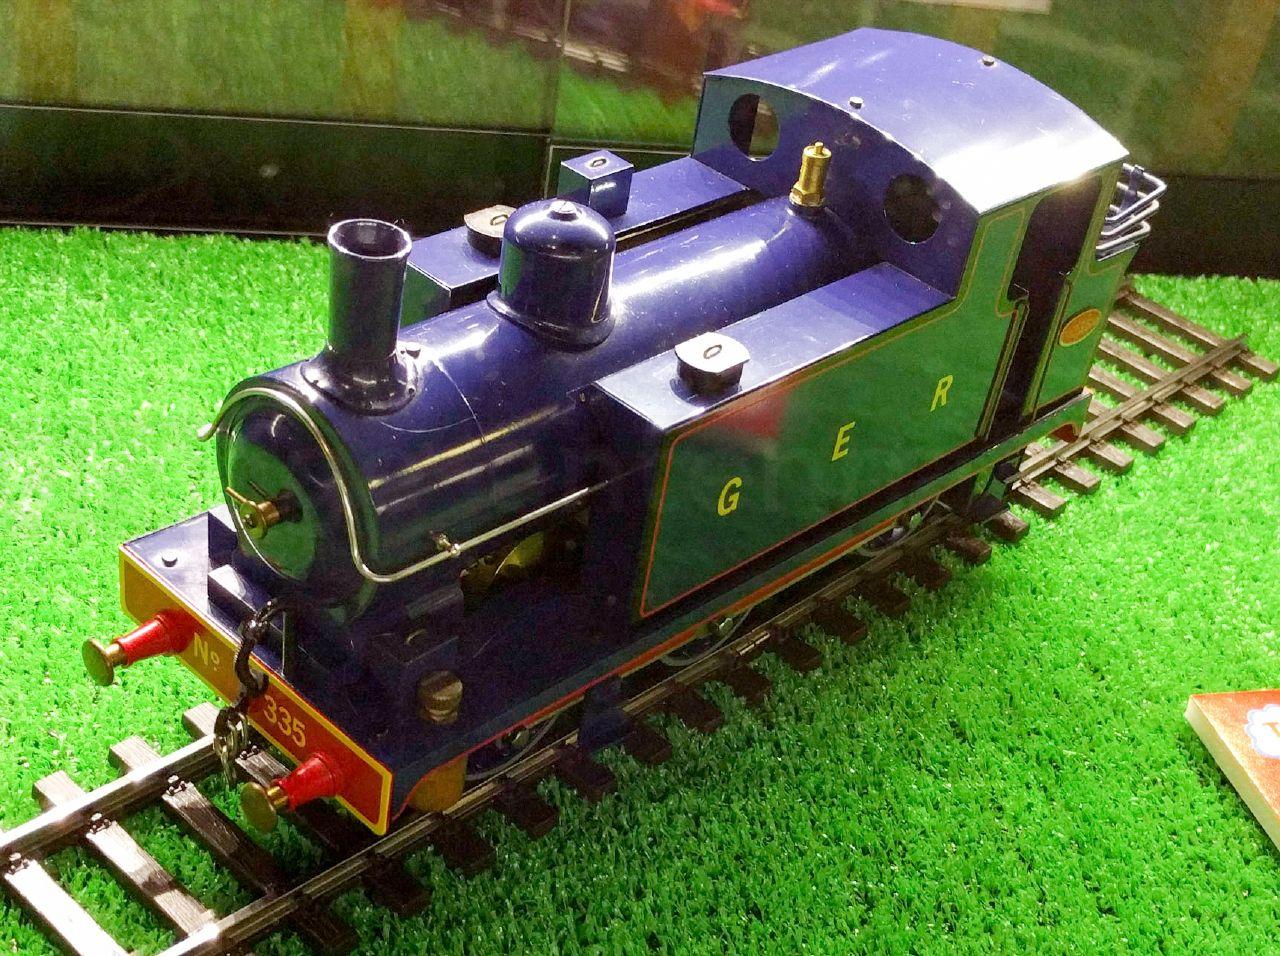 原鉄道模型博物館でトーマスのモデルになった機関車を見よう おれんじあんてな